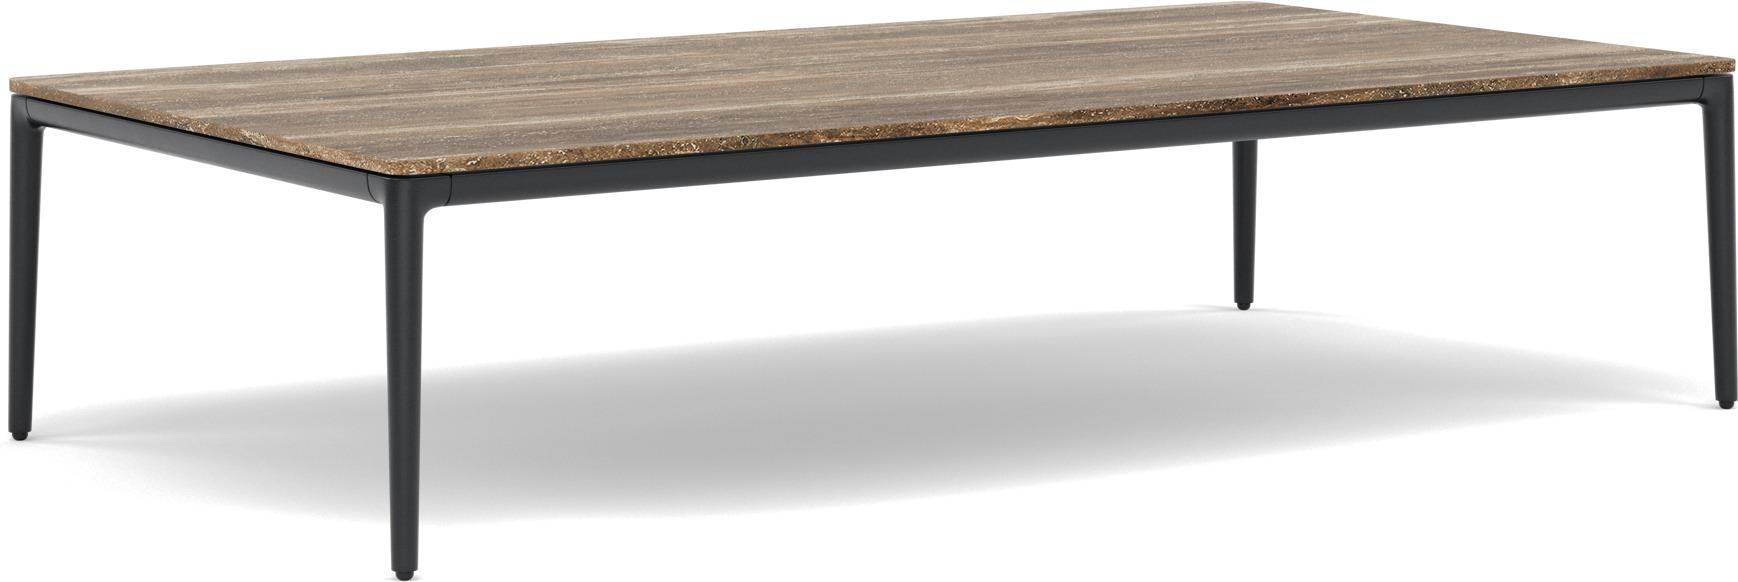 Zendo Sense Table basse 150X80x35h